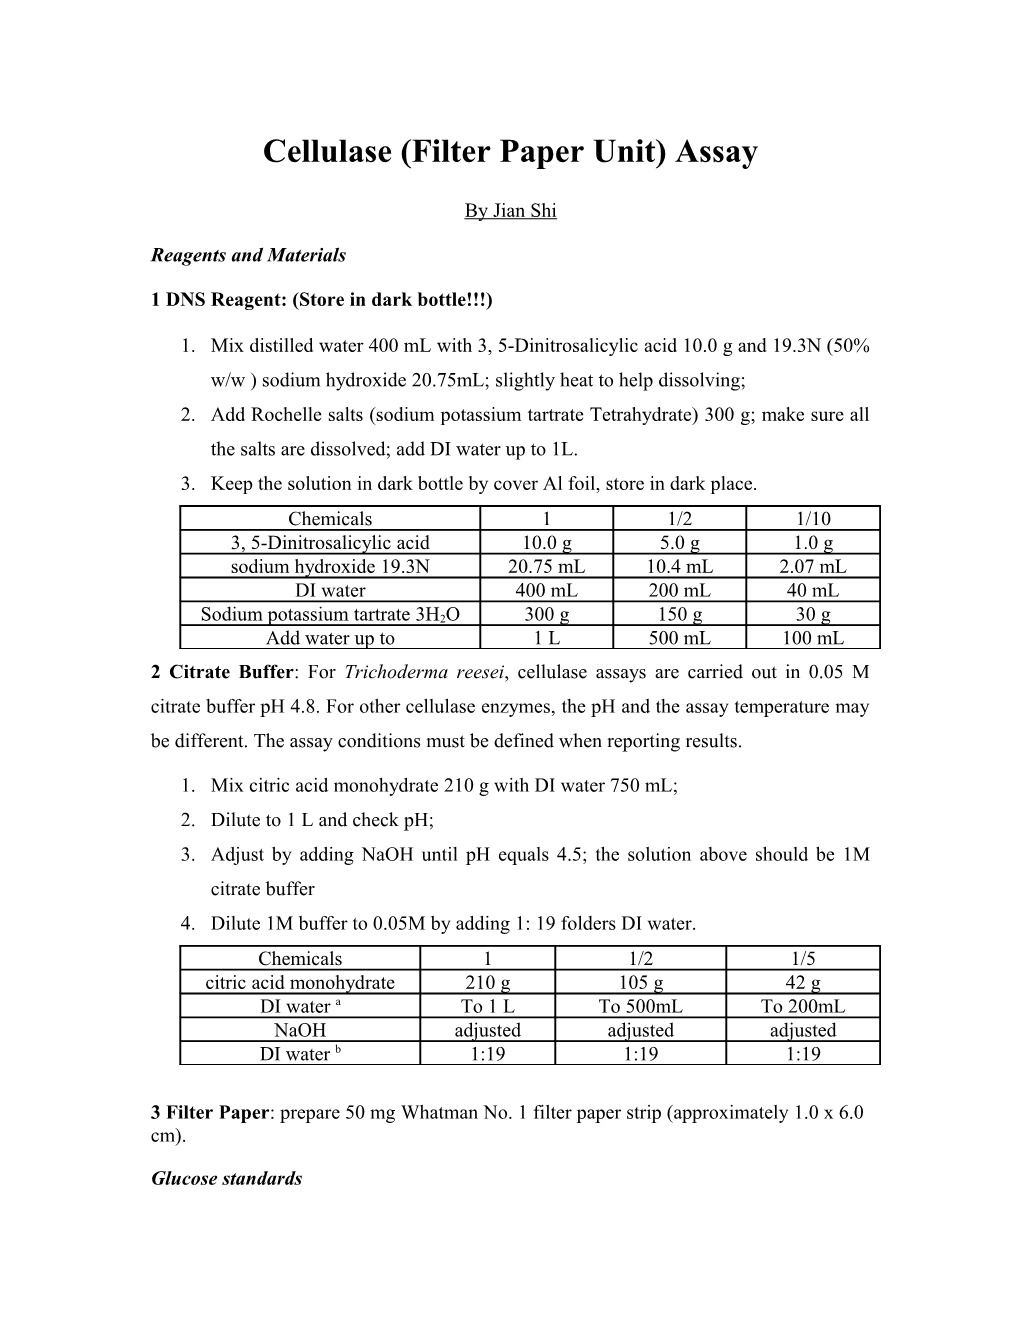 Cellulase (Filter Paper Unit) Assay s1